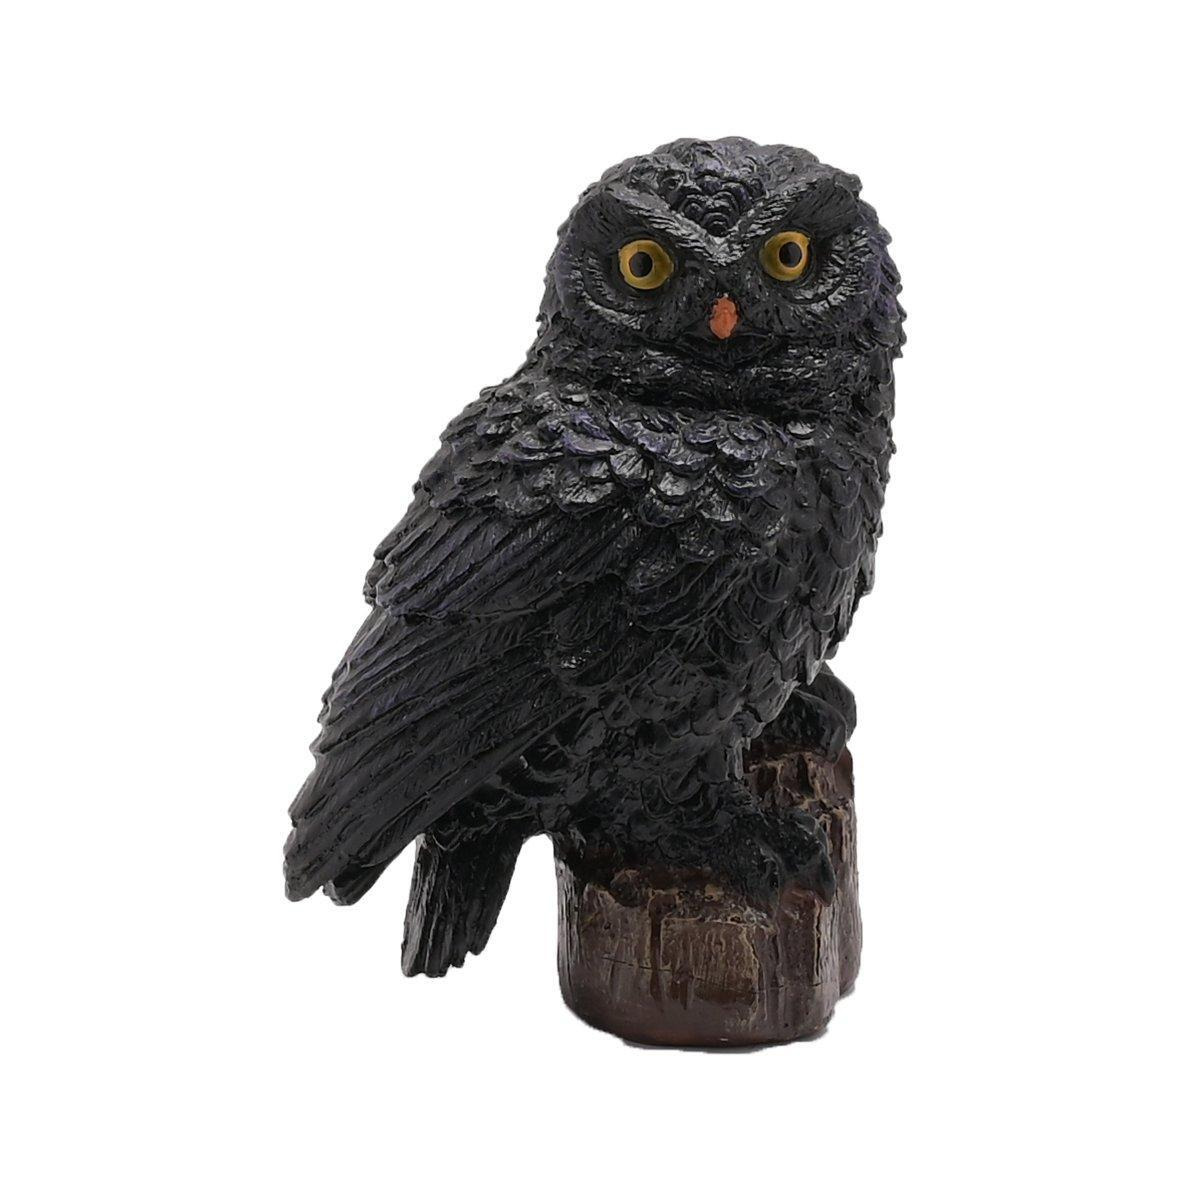 Hocus Pocus Halloween Black Owl Figurine - image 1